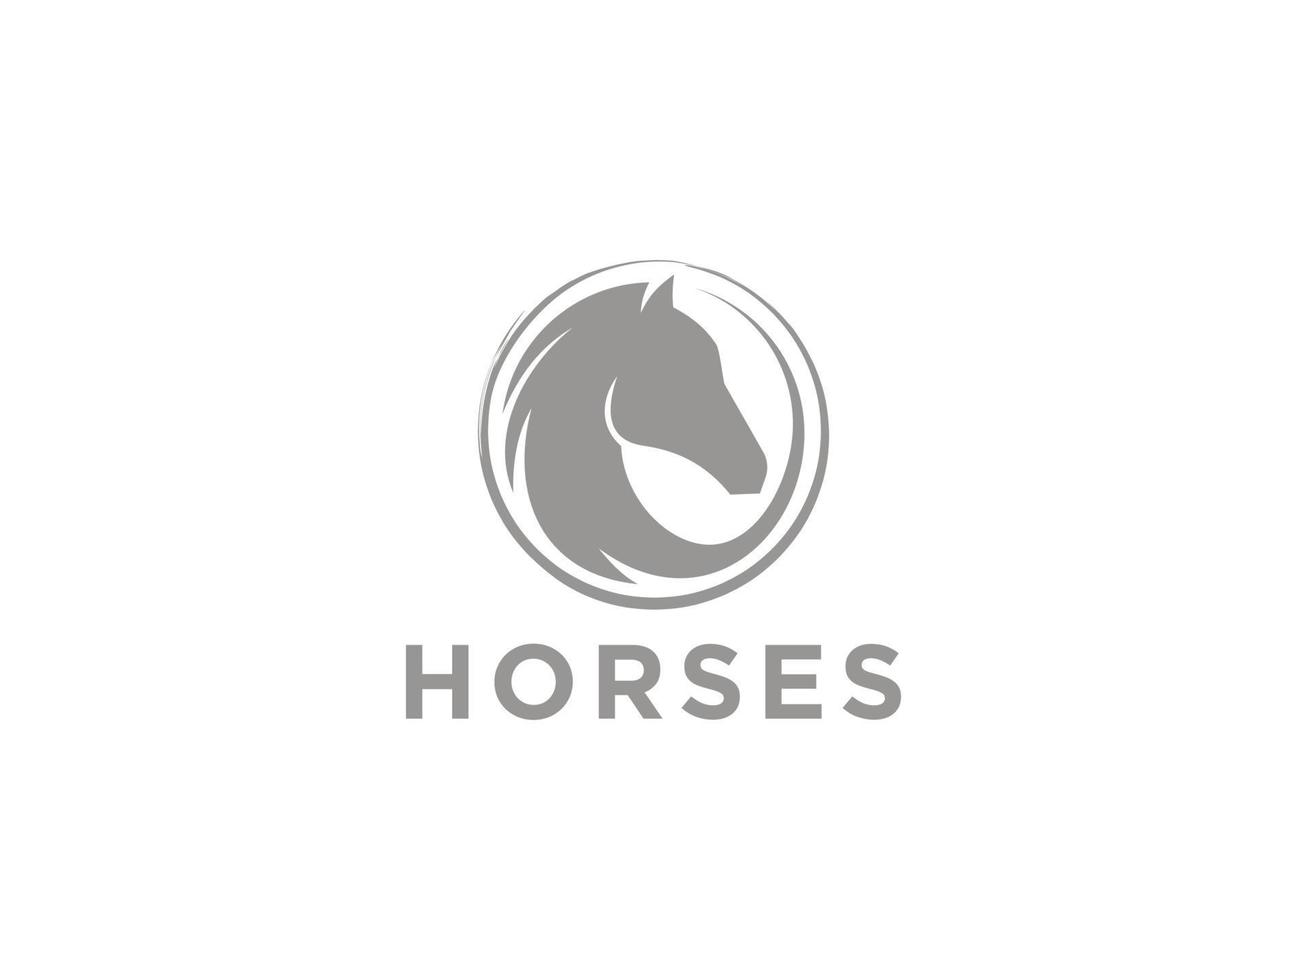 diseño del logotipo del semental estable del rancho de caballos de belleza. utilizable para logotipos comerciales y de marca. elemento de plantilla de diseño de logotipo de vector plano.